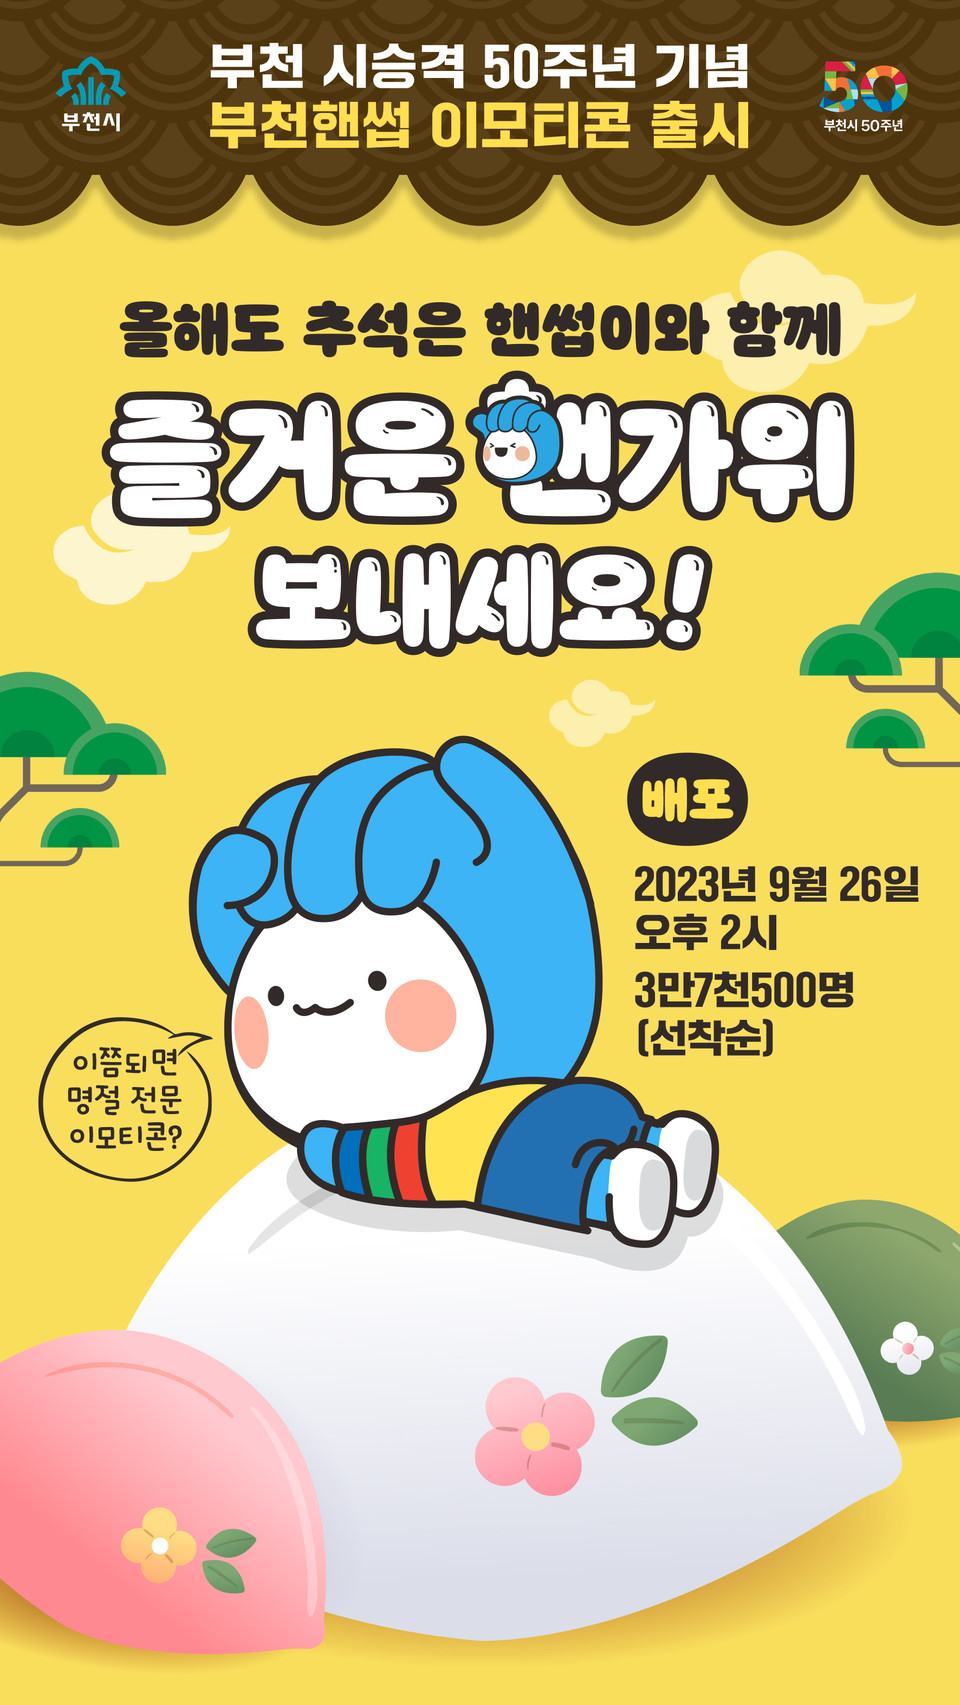 부천시 시승격 50주년 기념 부천핸썹 이모티콘 출시 홍보문